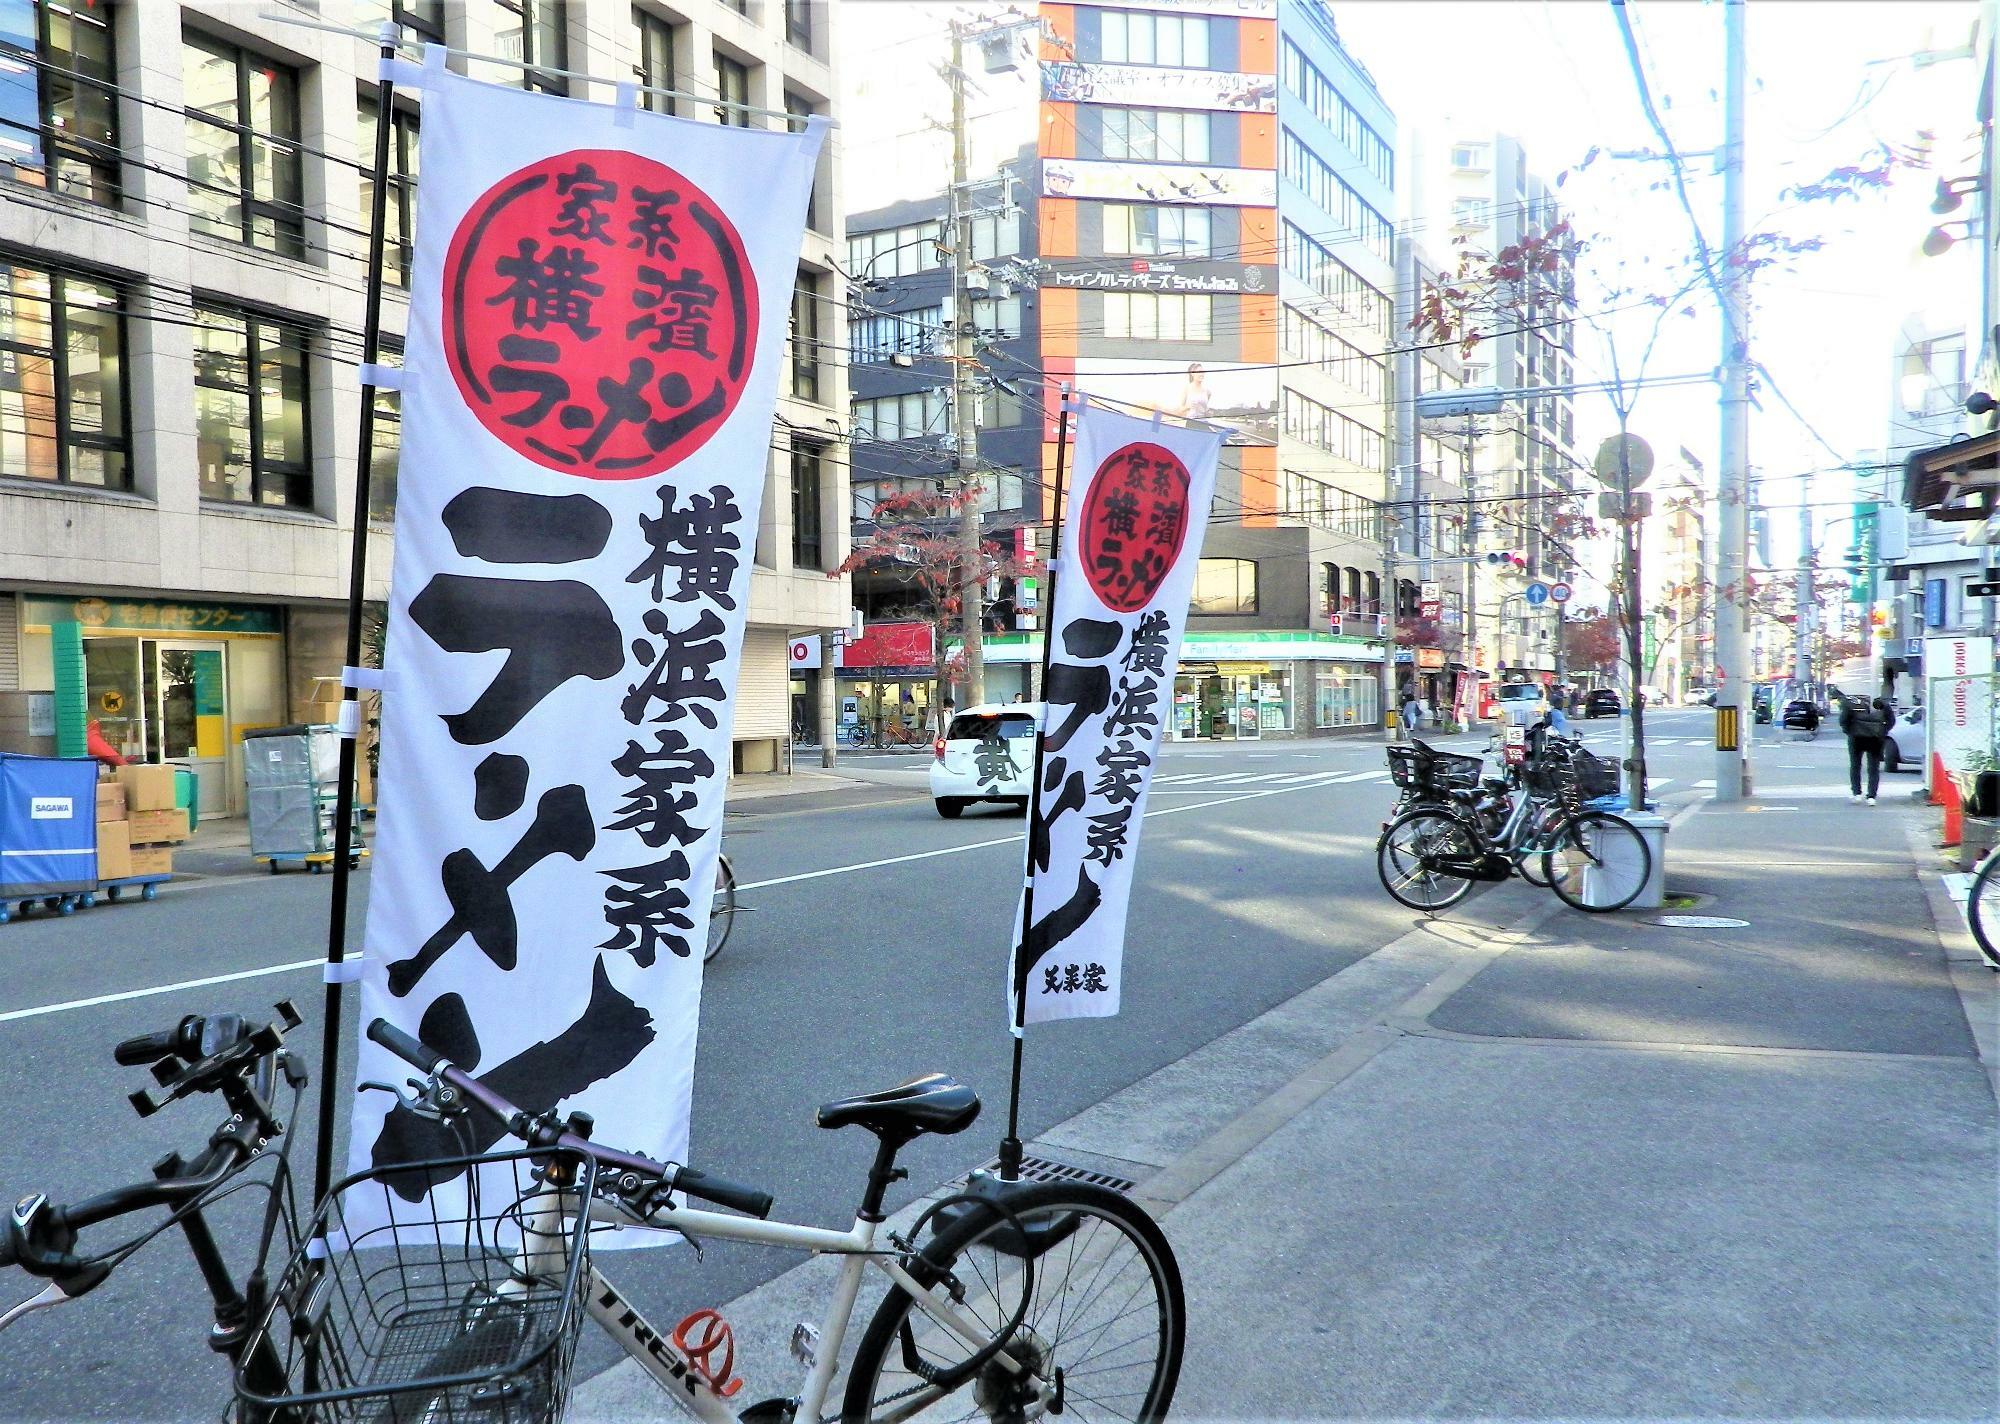 横浜家系ラーメンの文字がインパクトのあるノボリ。